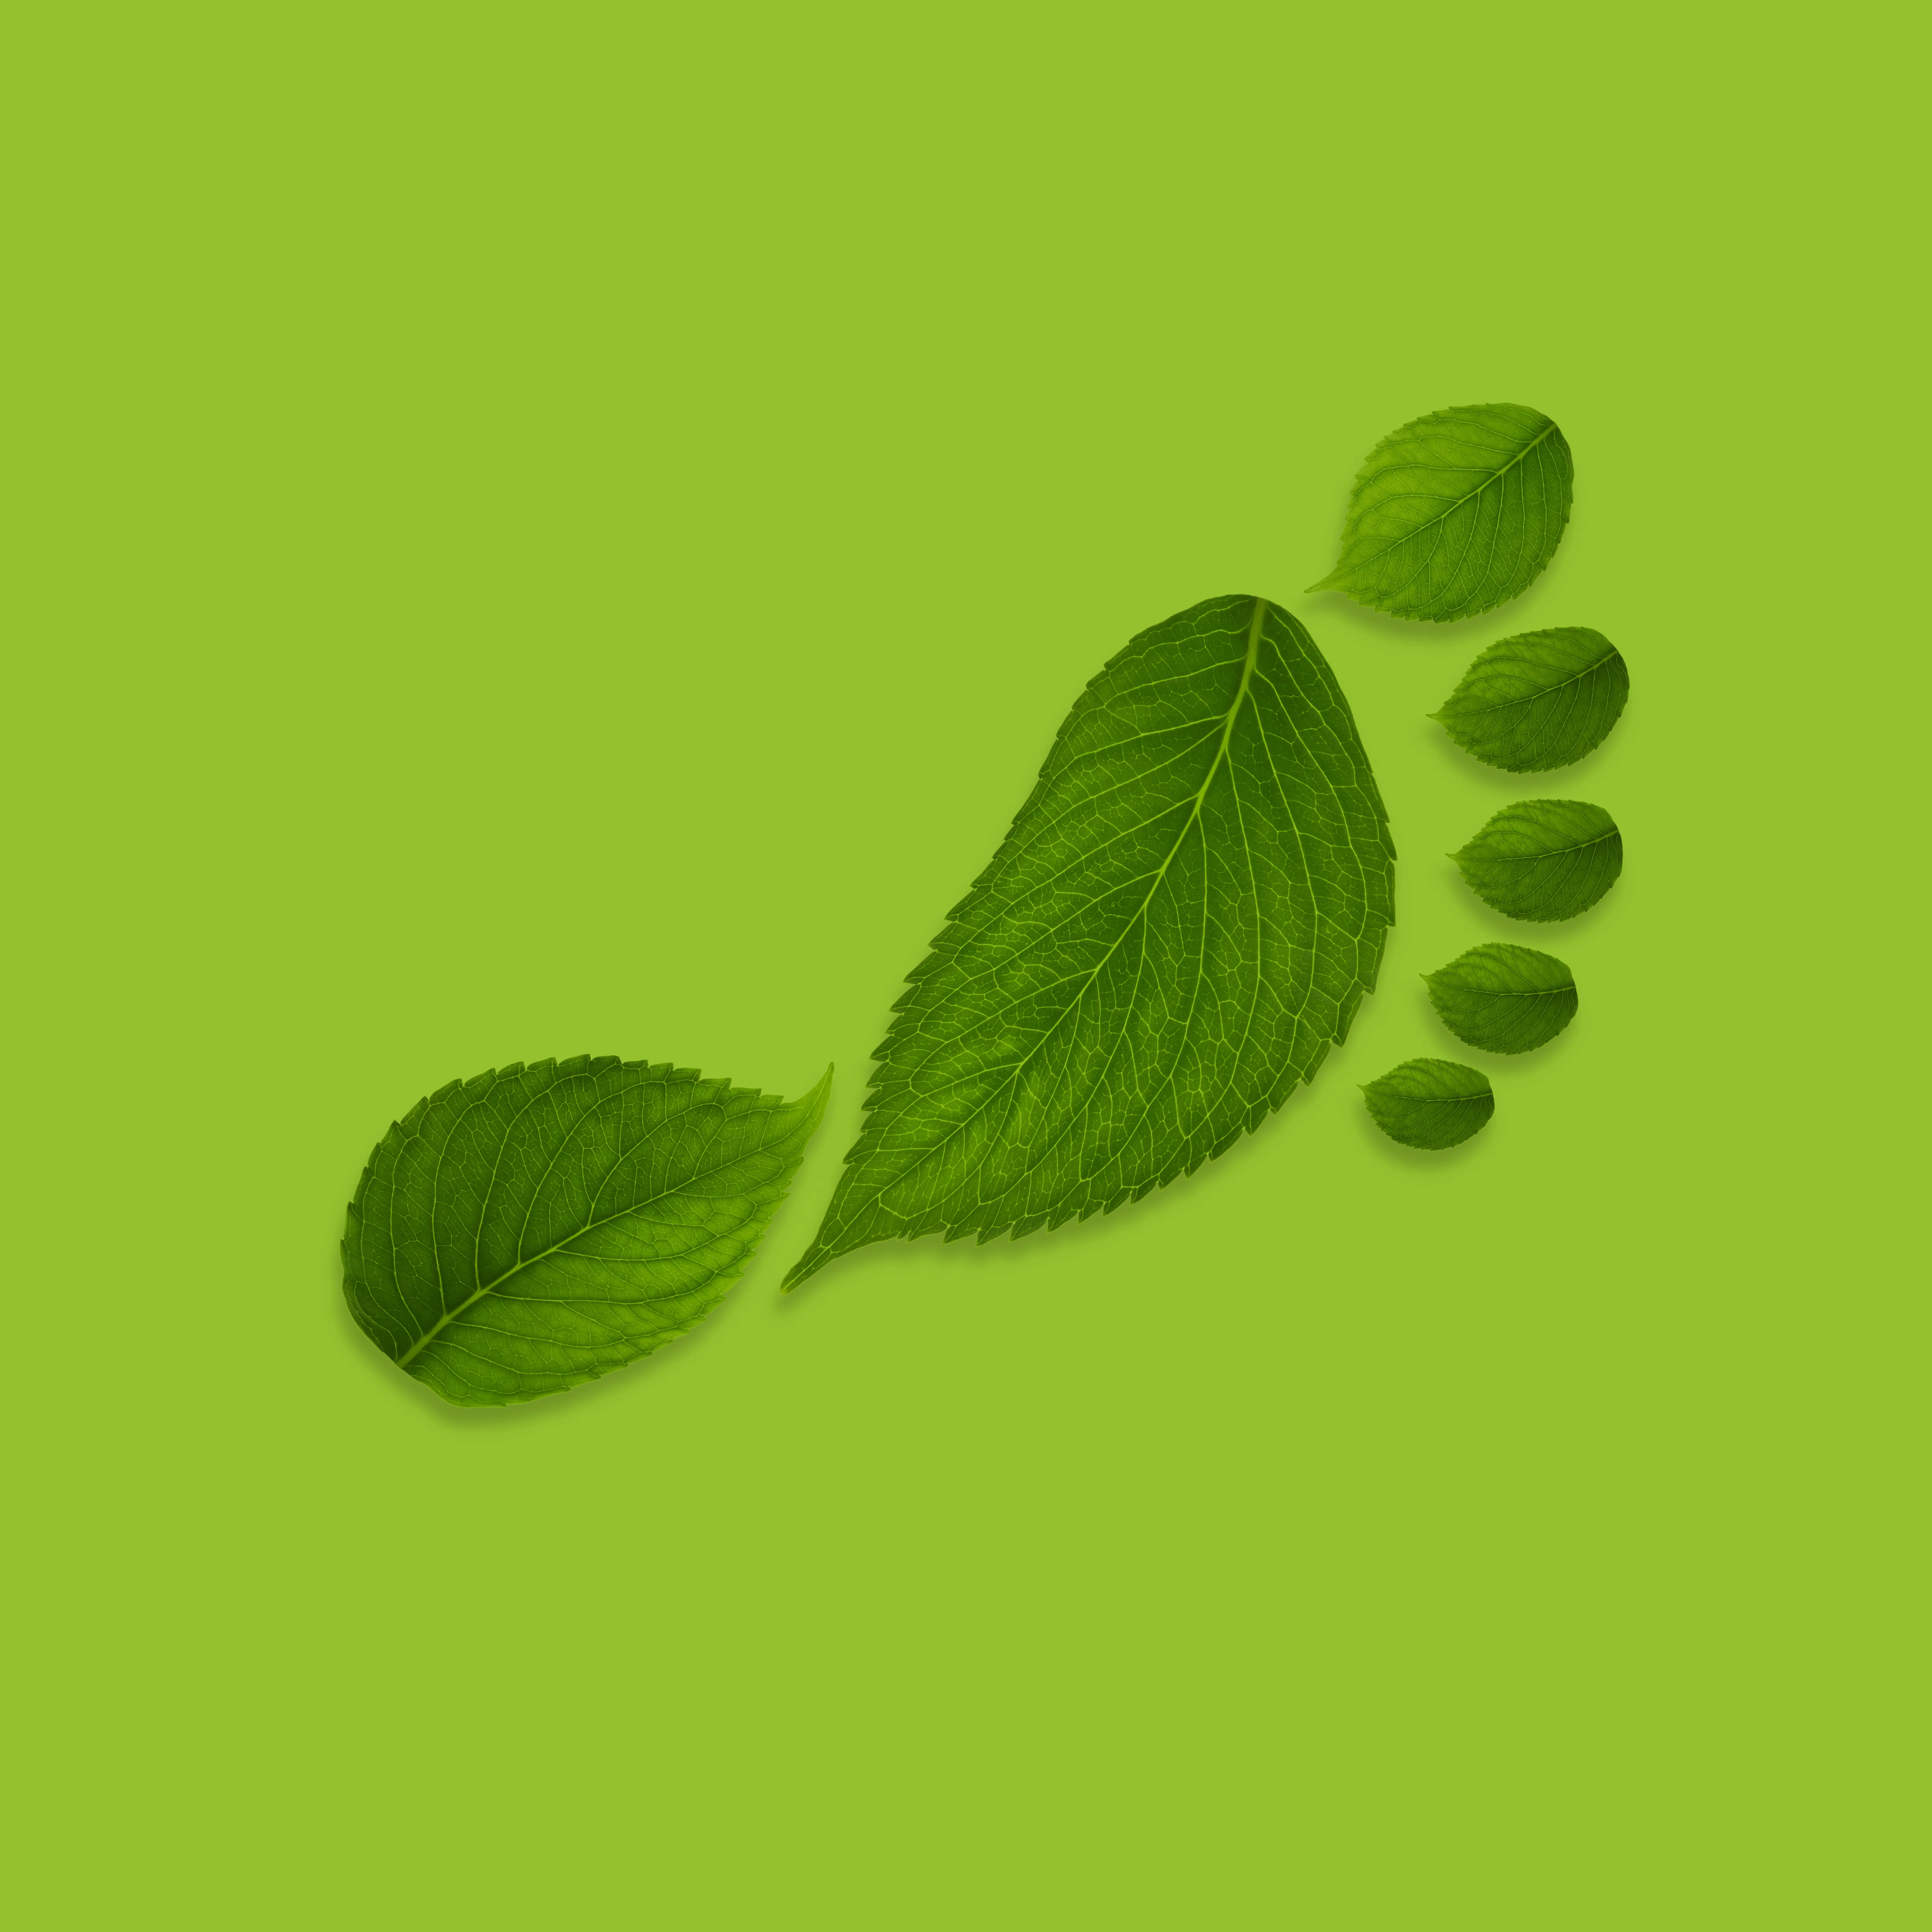 footprint of leaves